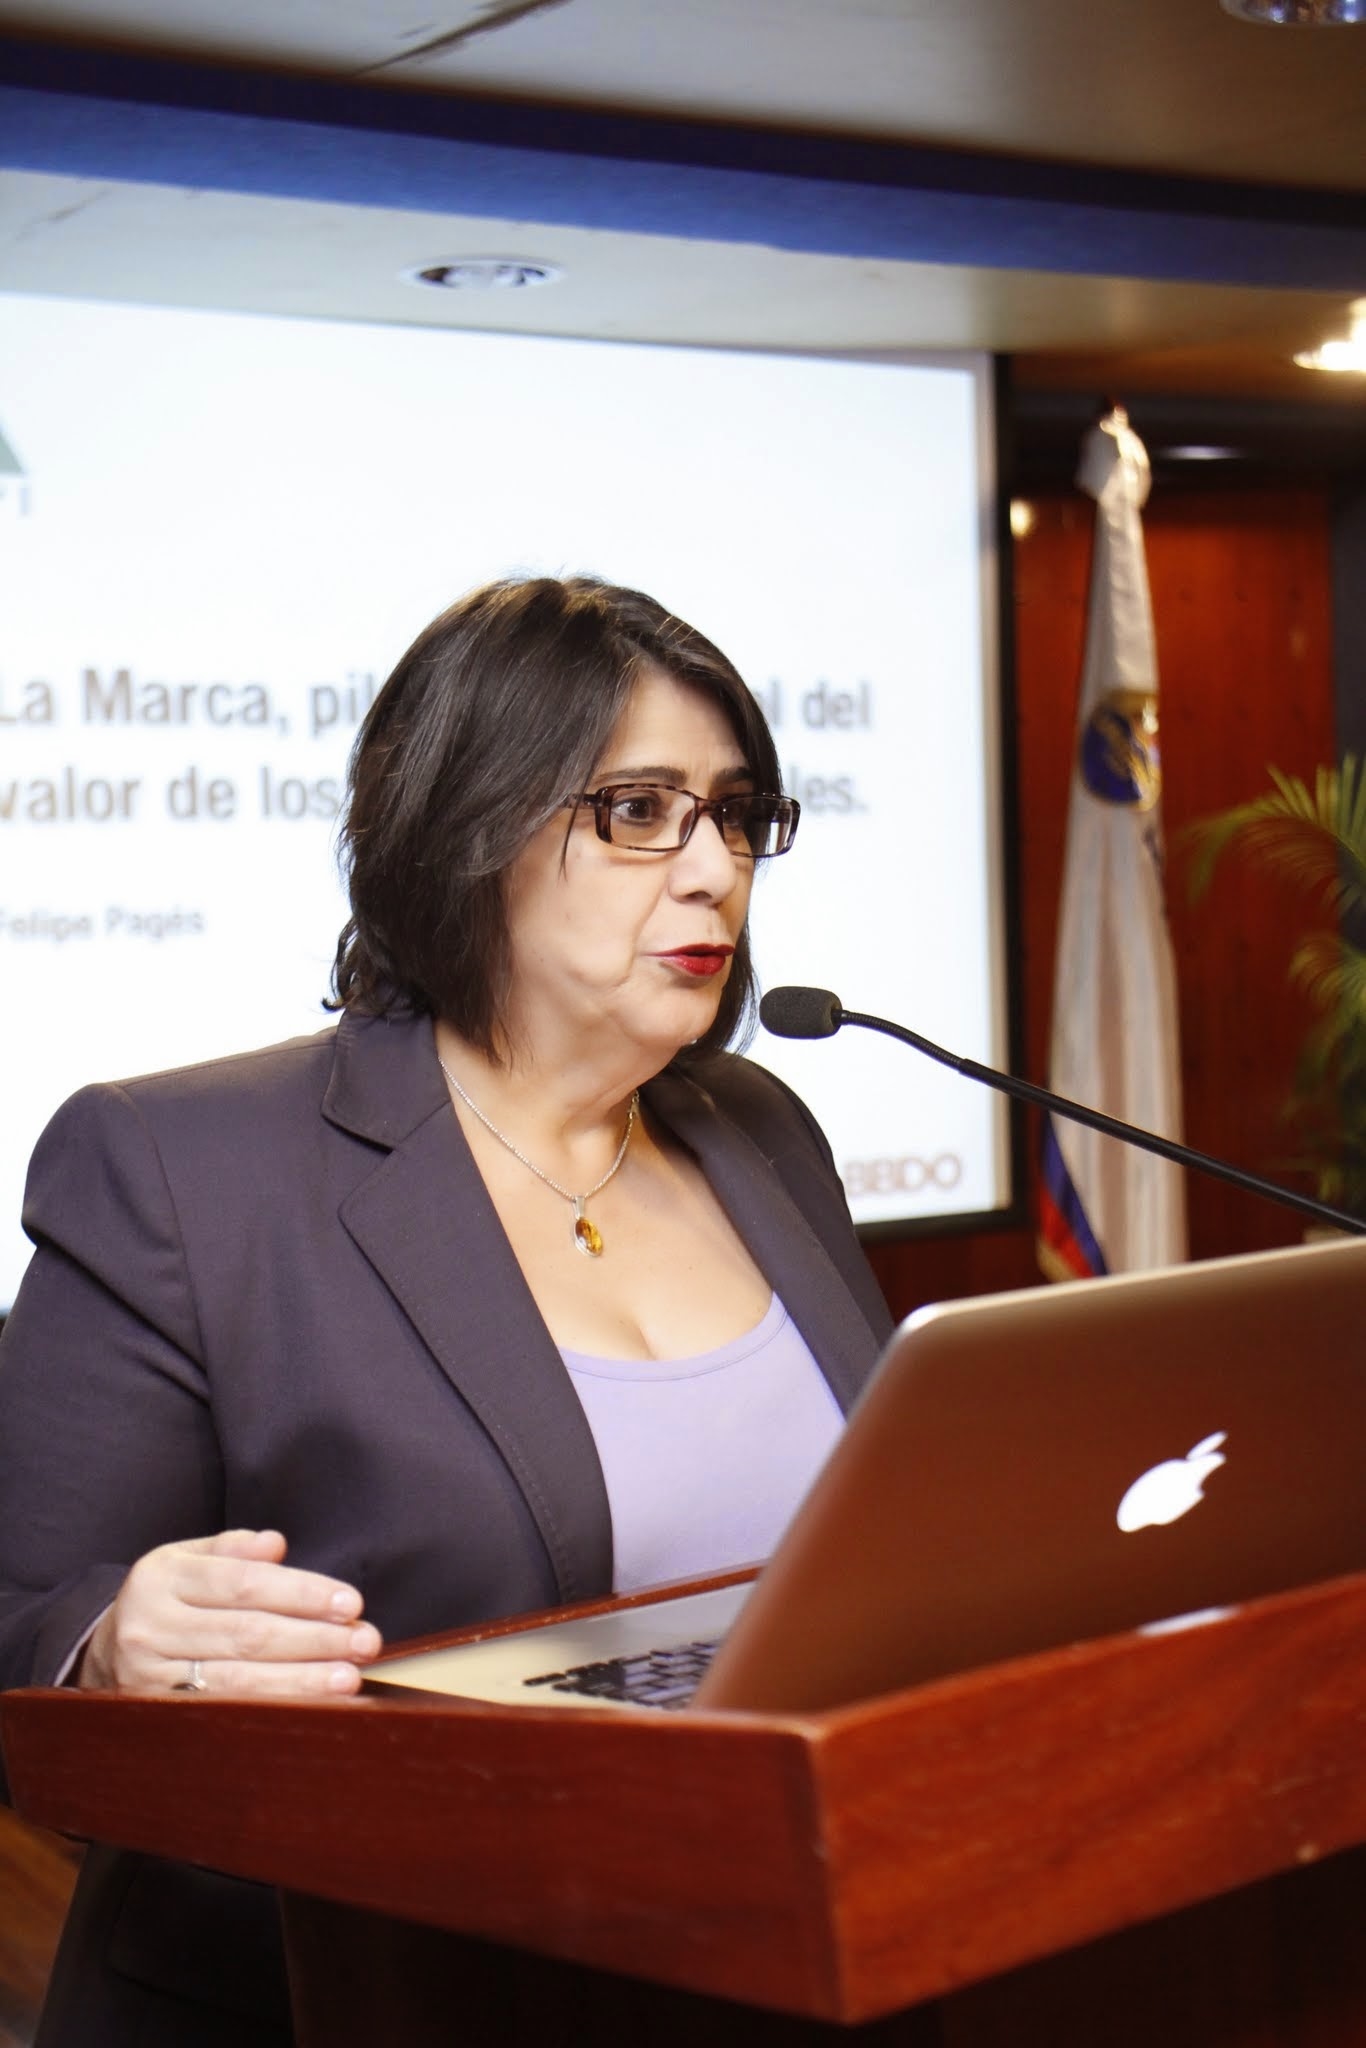 Las palabras de bienvenida estuvieron a cargo de la Dra. Dalma Cruz Mirabal, Vicerrectora de Graduados, quien resaltó la importancia de esta actividad